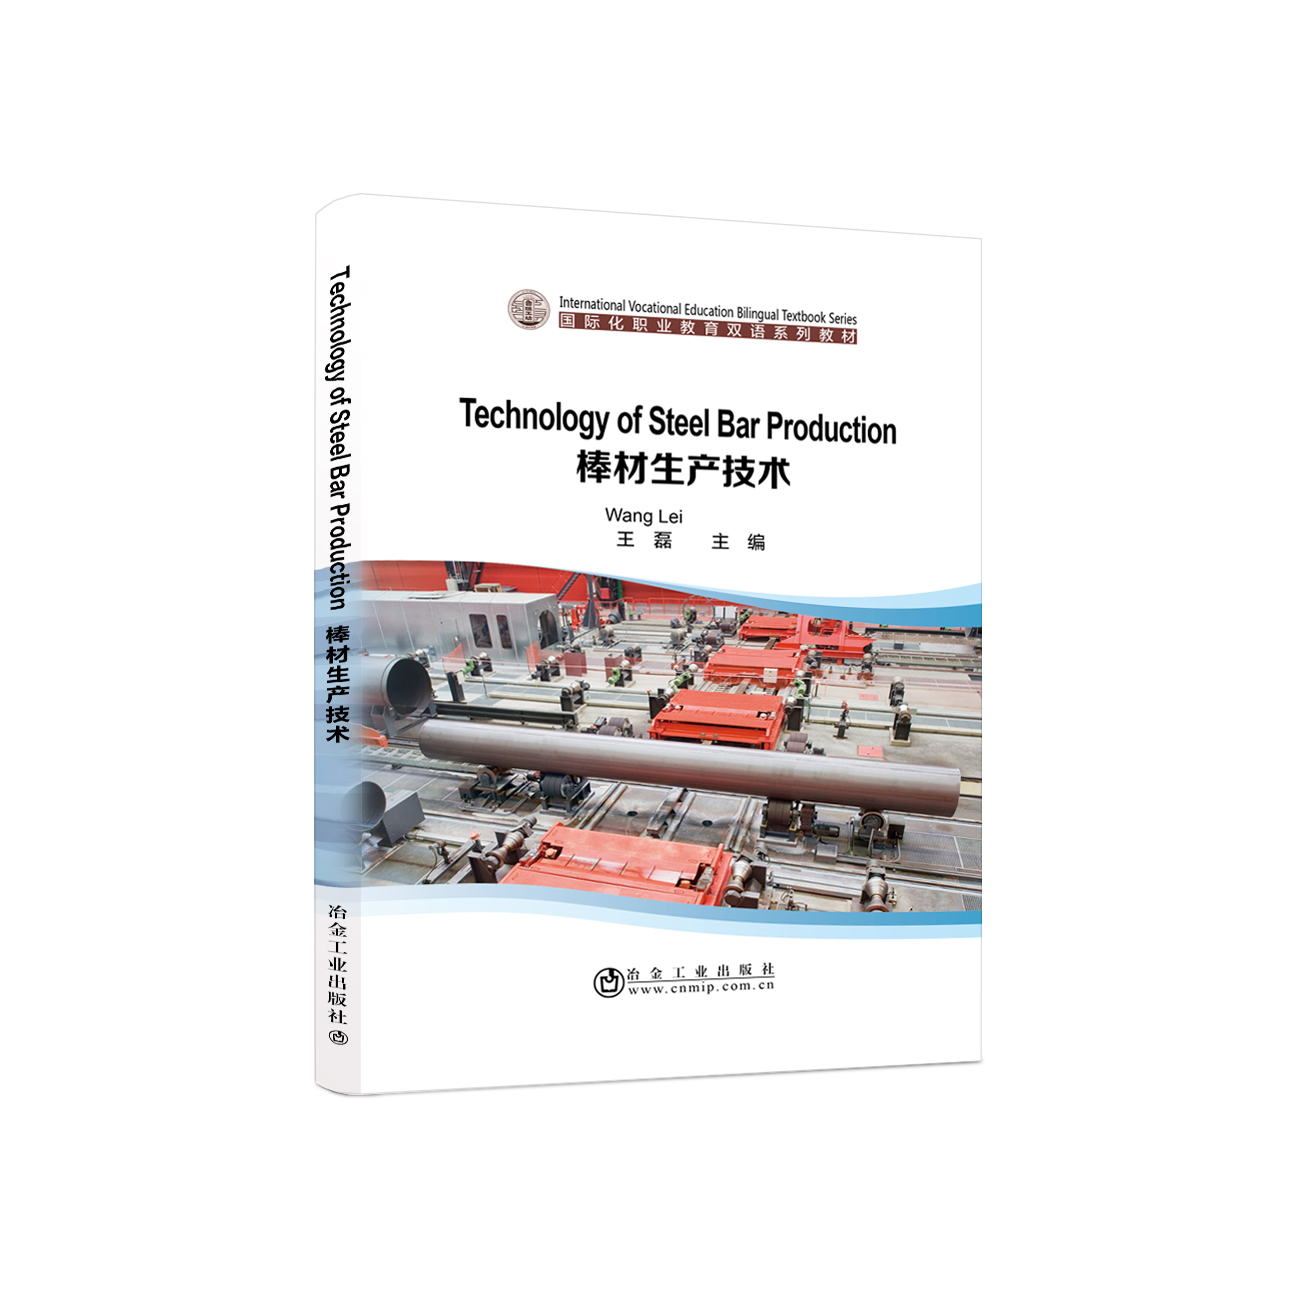 棒材生产技术Technology of Steel Bar Production 双语版  王磊